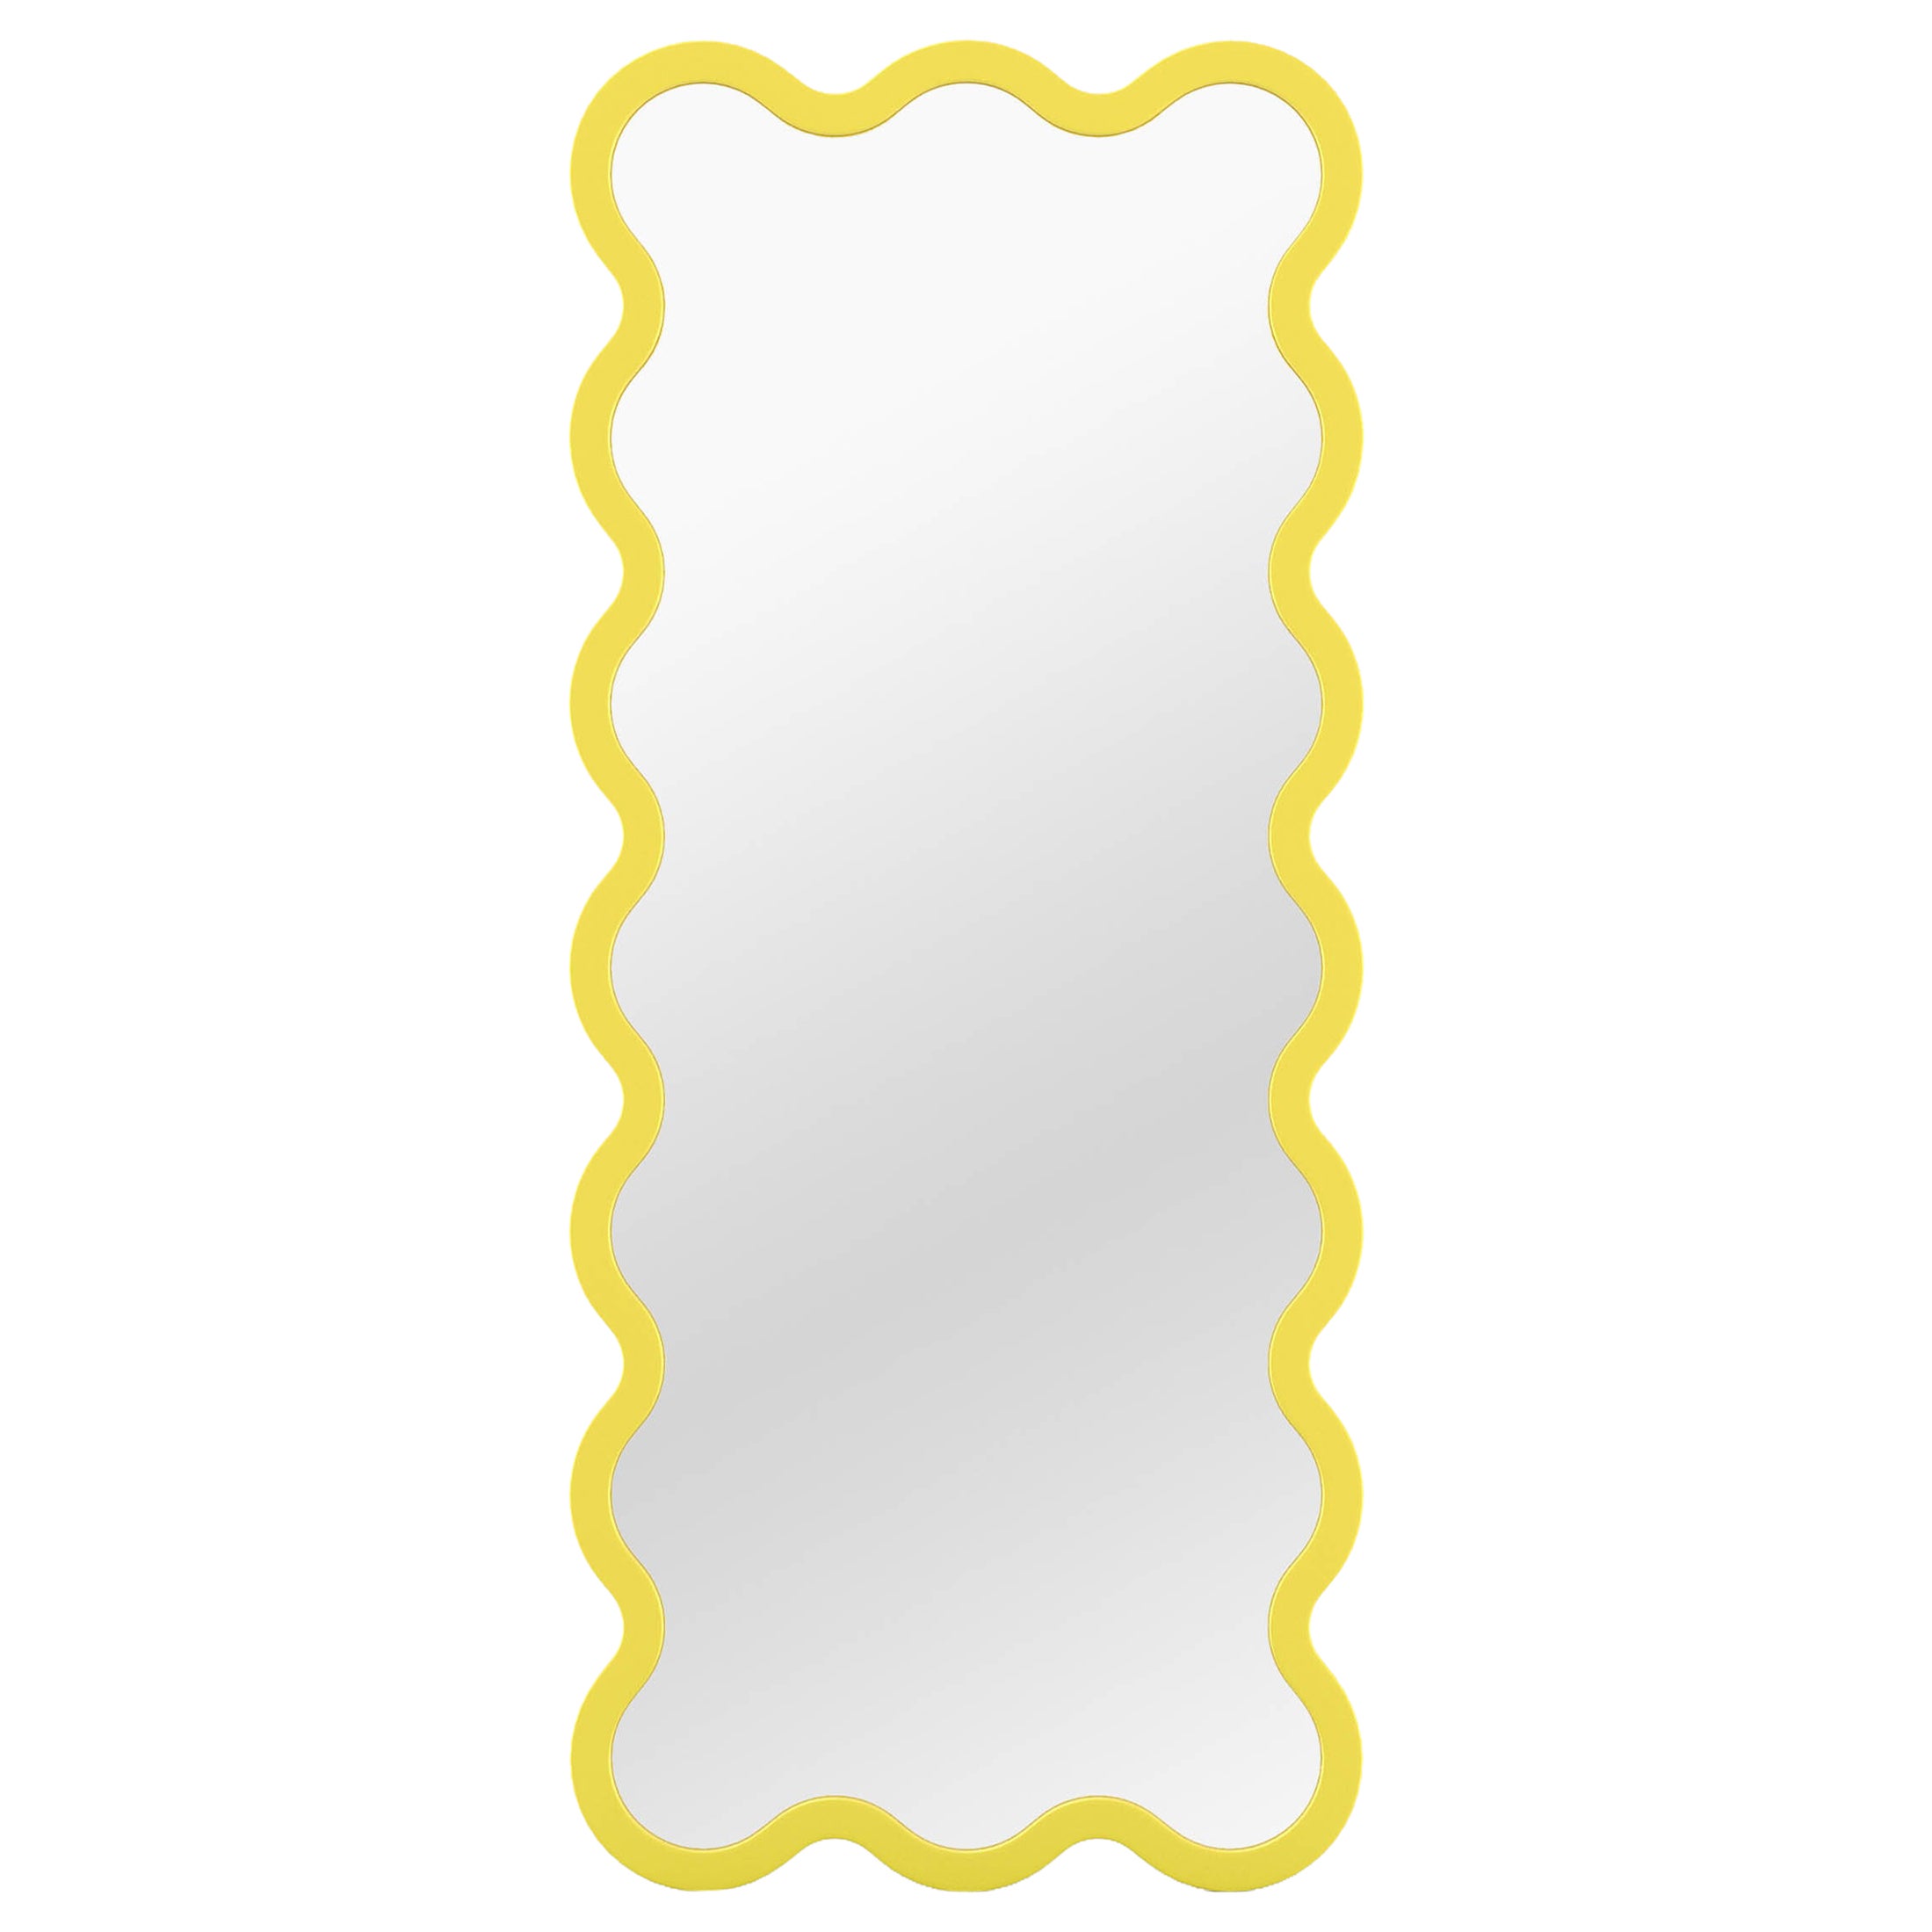 Miroir contemporain 'Hvyli 16' par Oitoproducts, cadre jaune